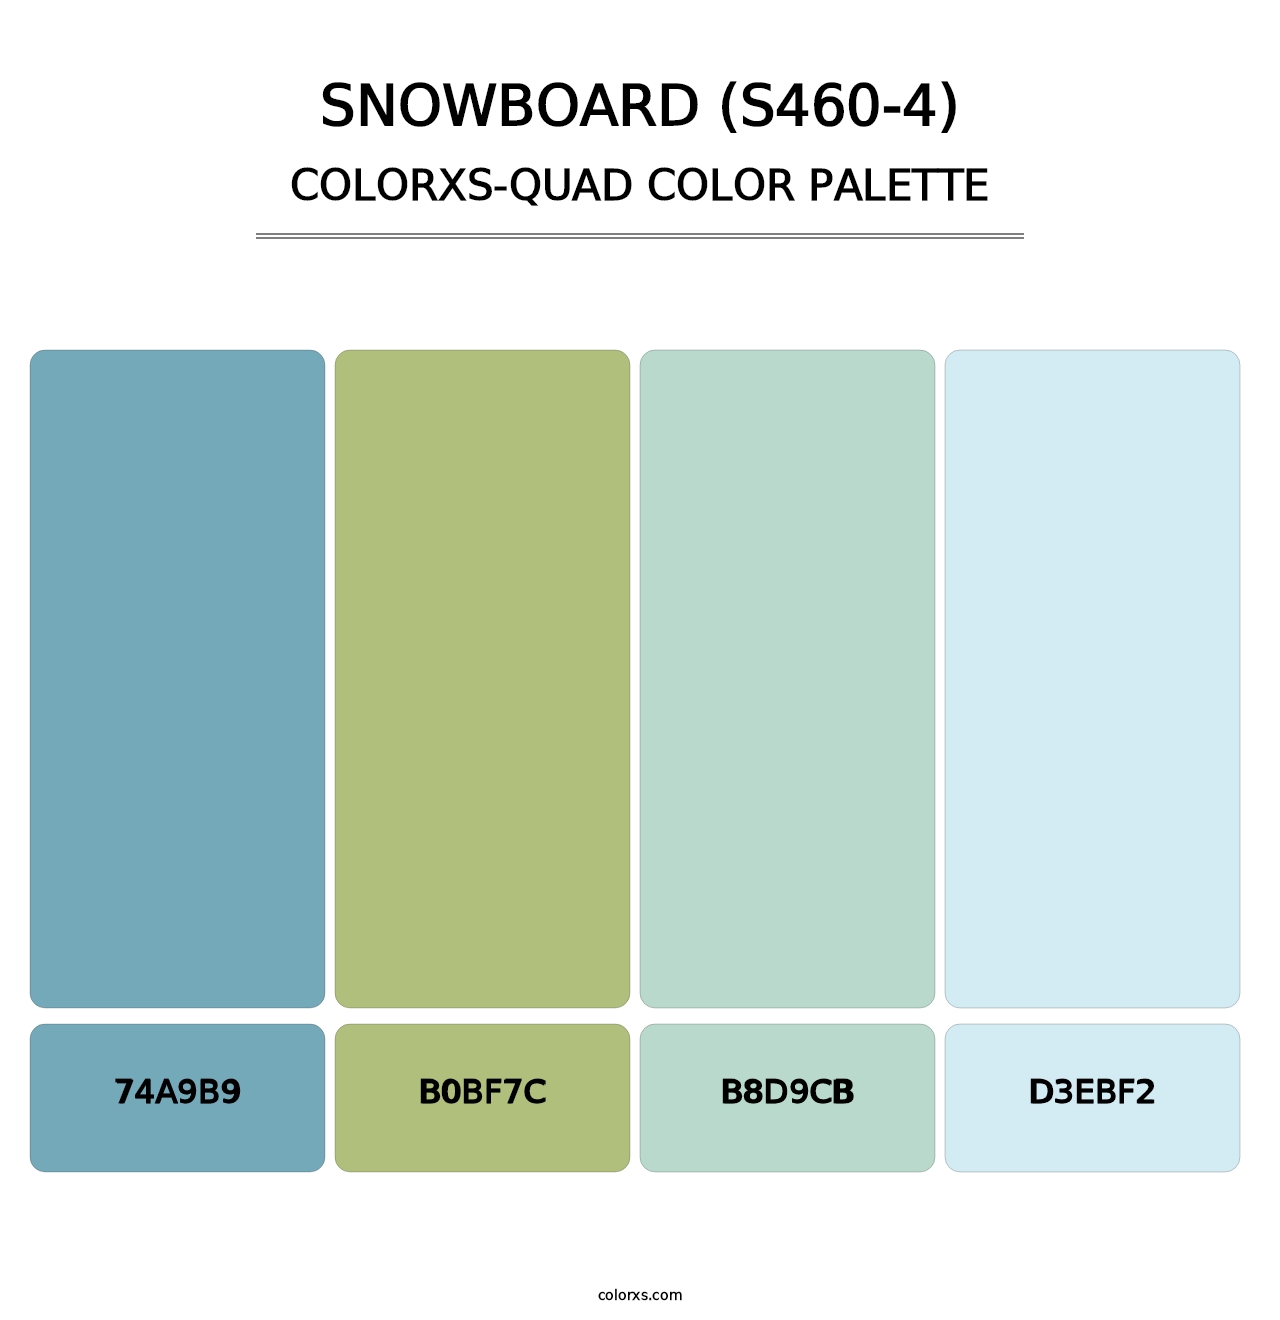 Snowboard (S460-4) - Colorxs Quad Palette